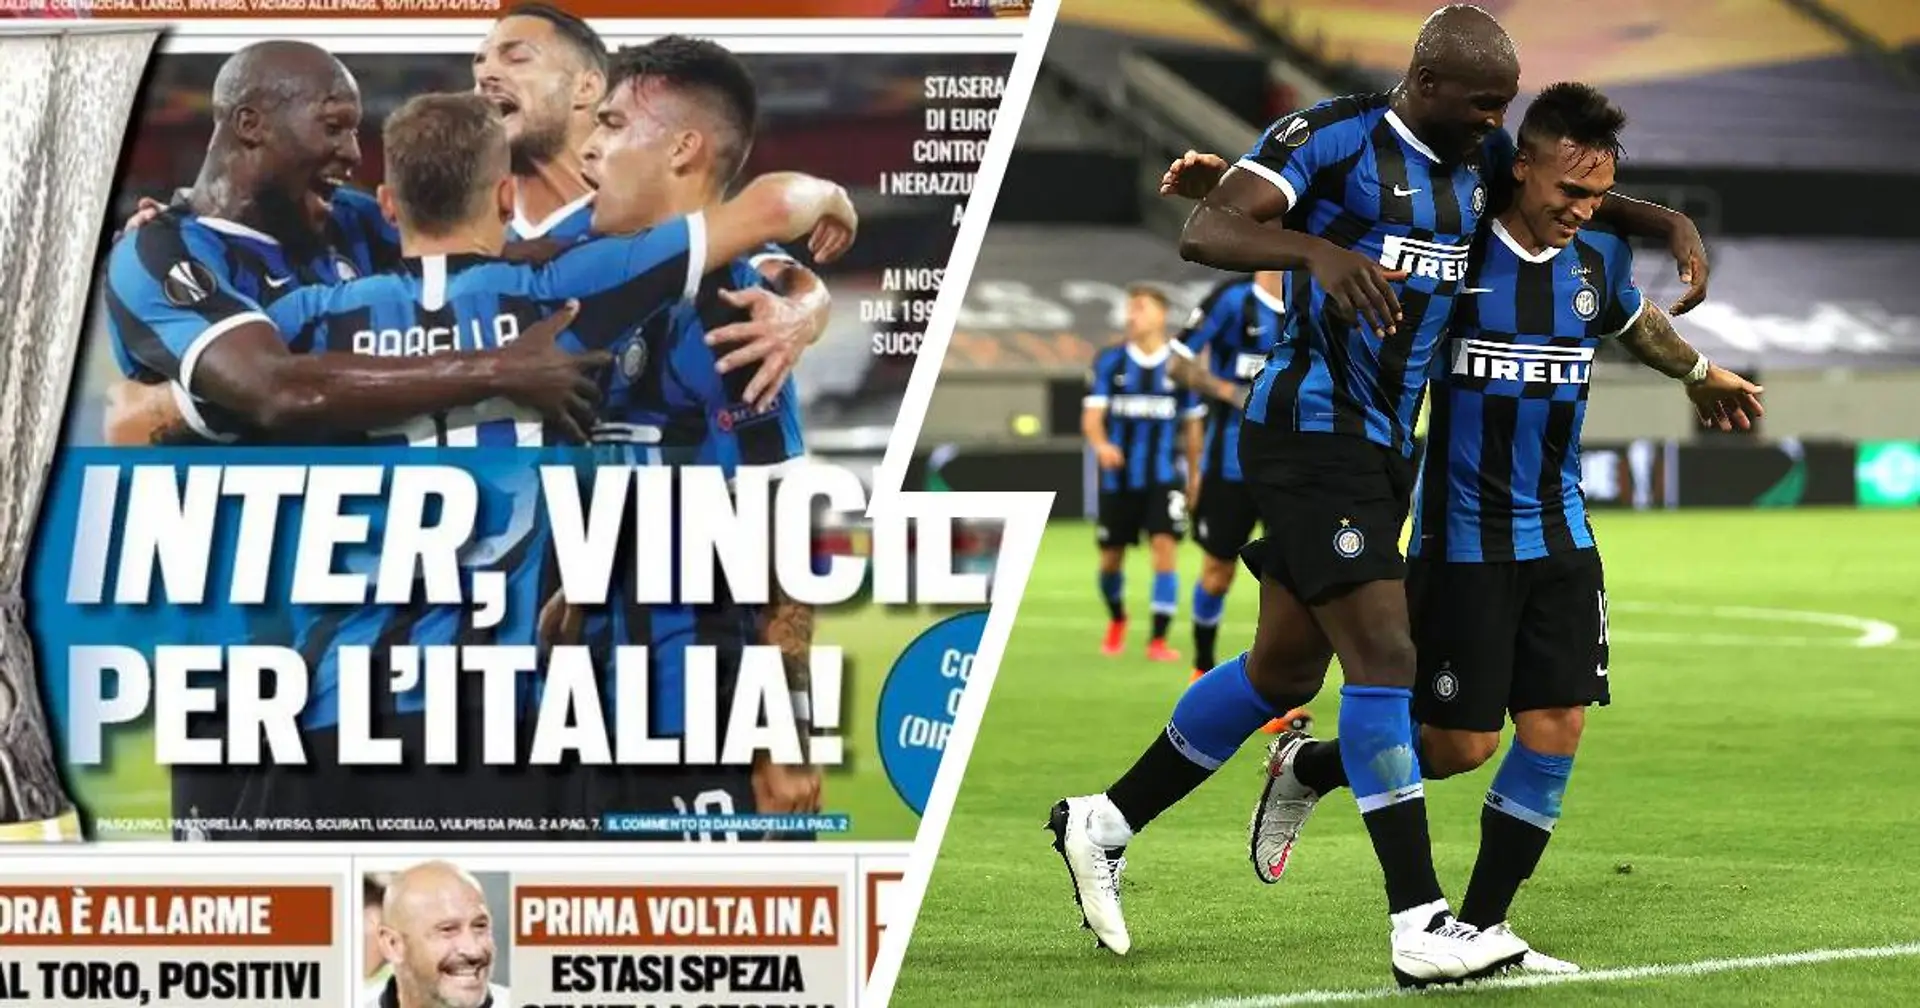 "Inter, vincila per l'Italia", la stampa esalta i ragazzi di Antonio Conte in vista della finale di stasera 